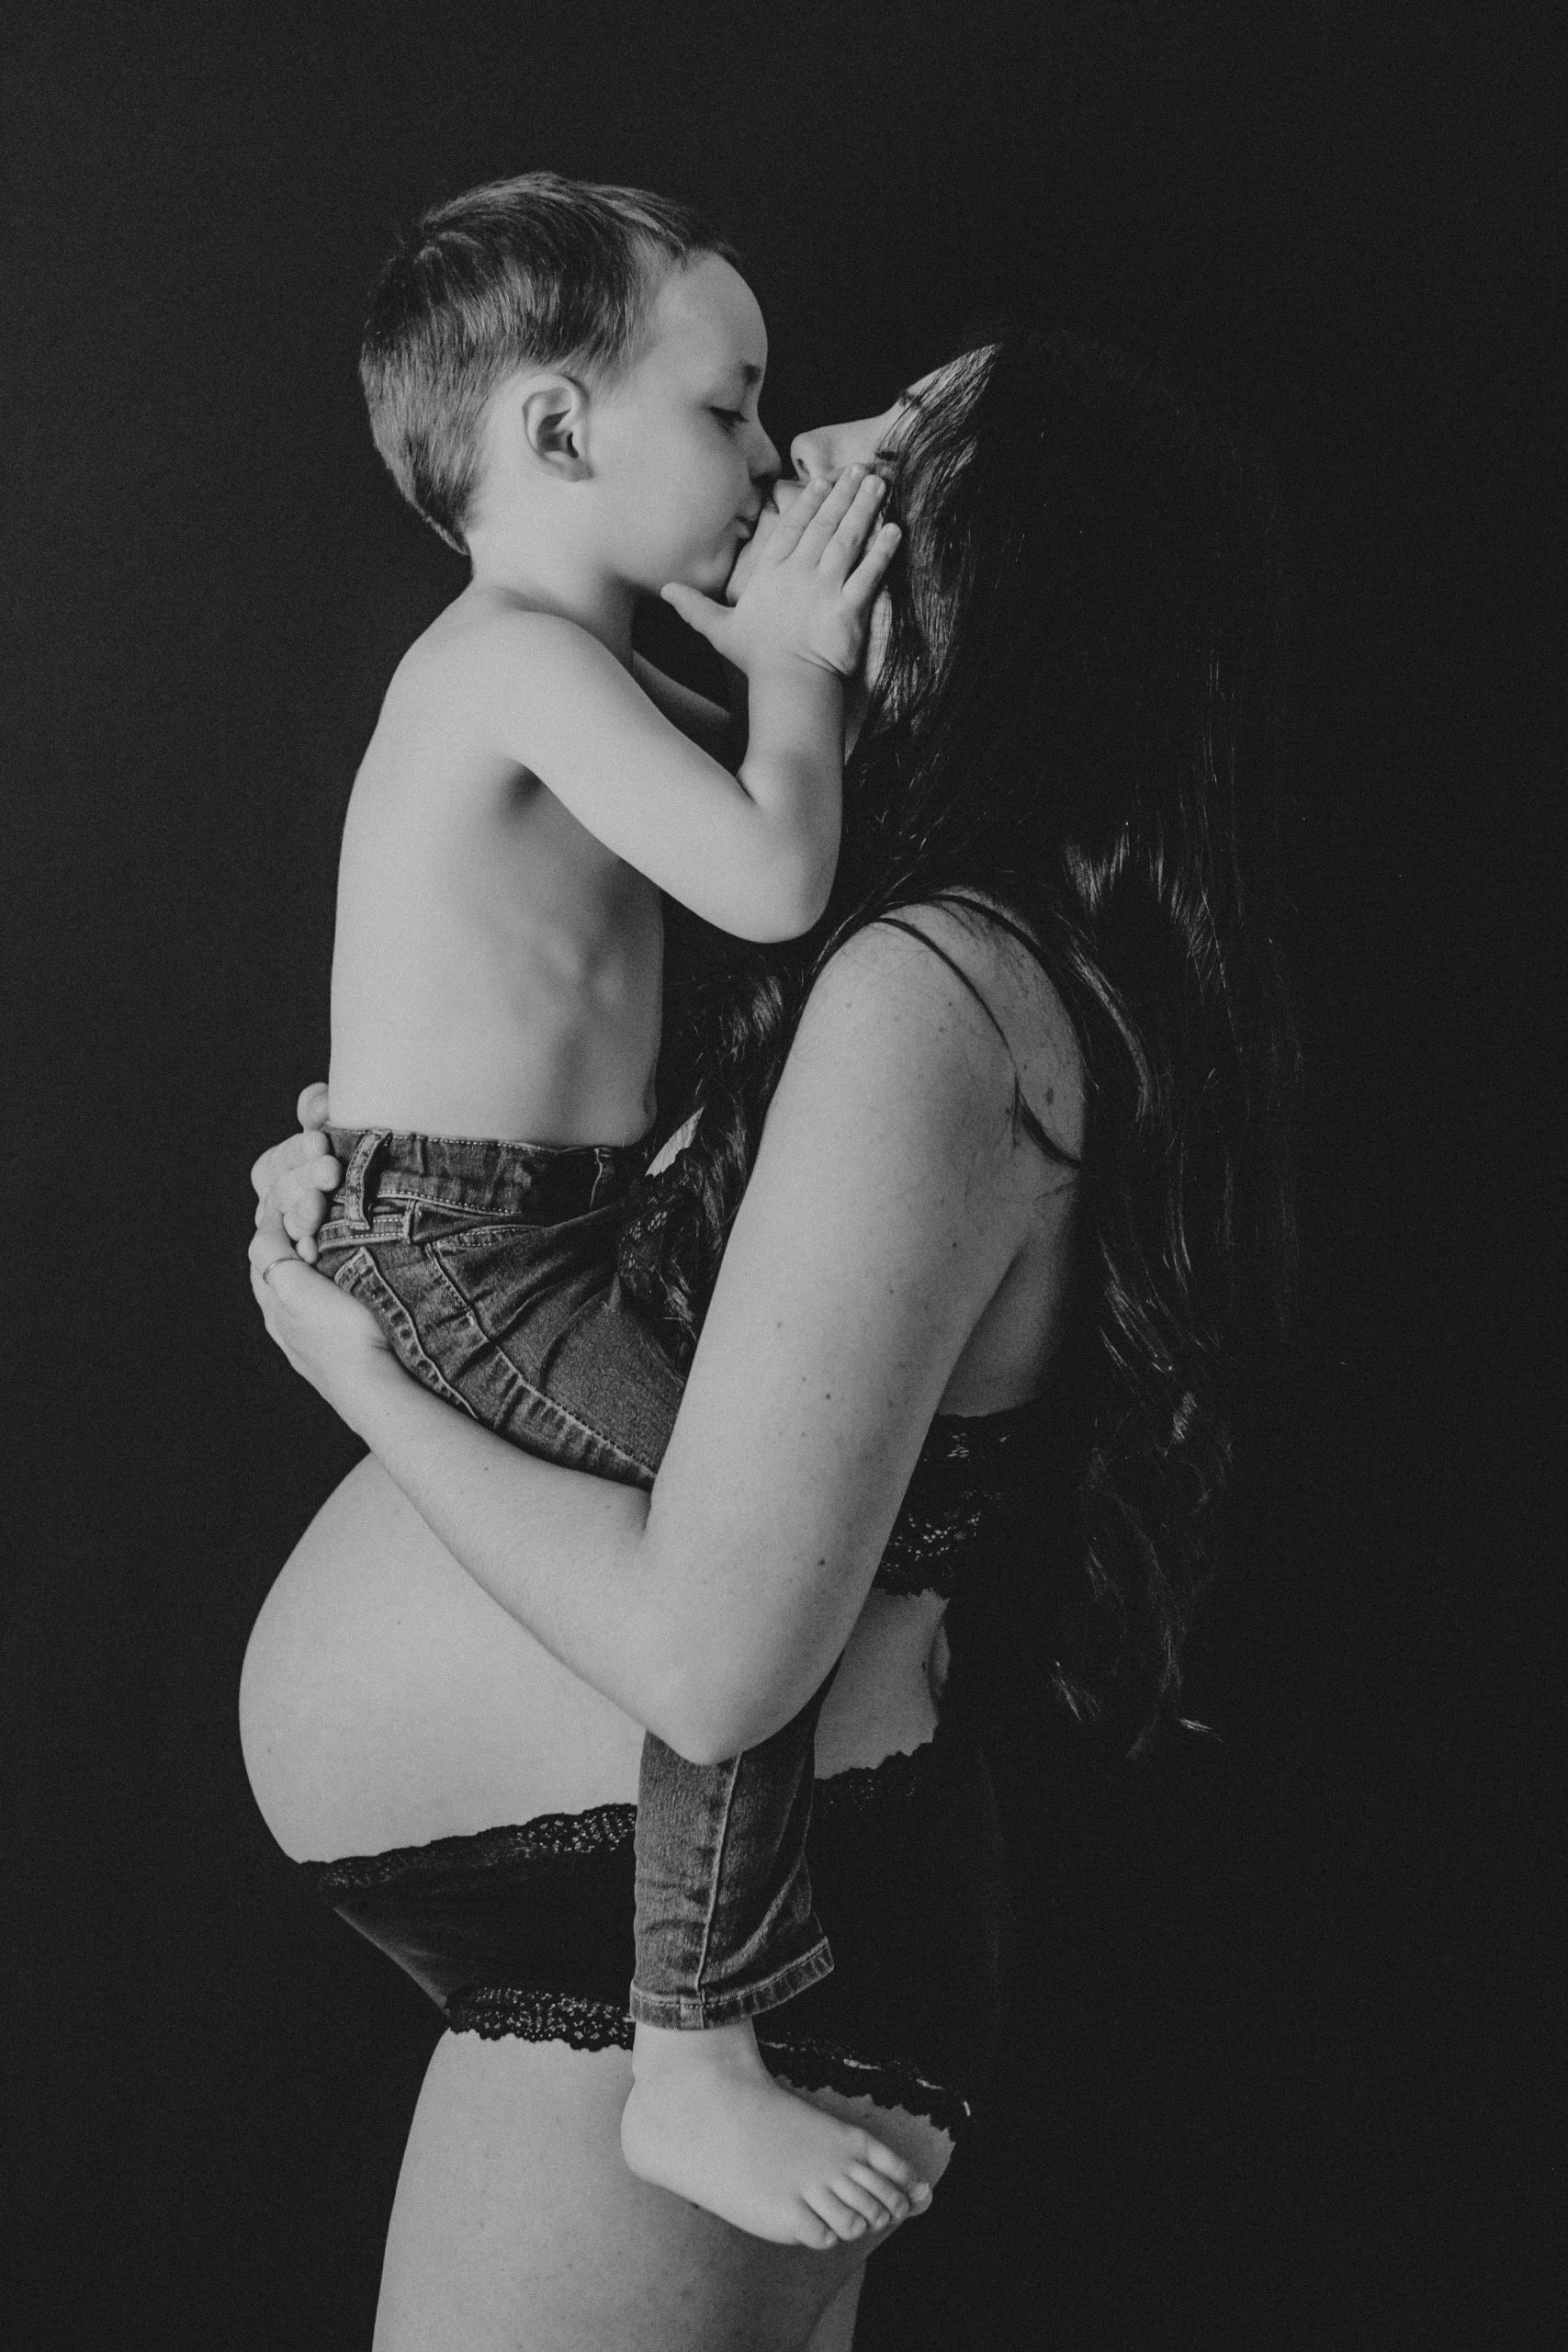 Fotografía en blanco y negro de una madre dandole un beso a su hijo